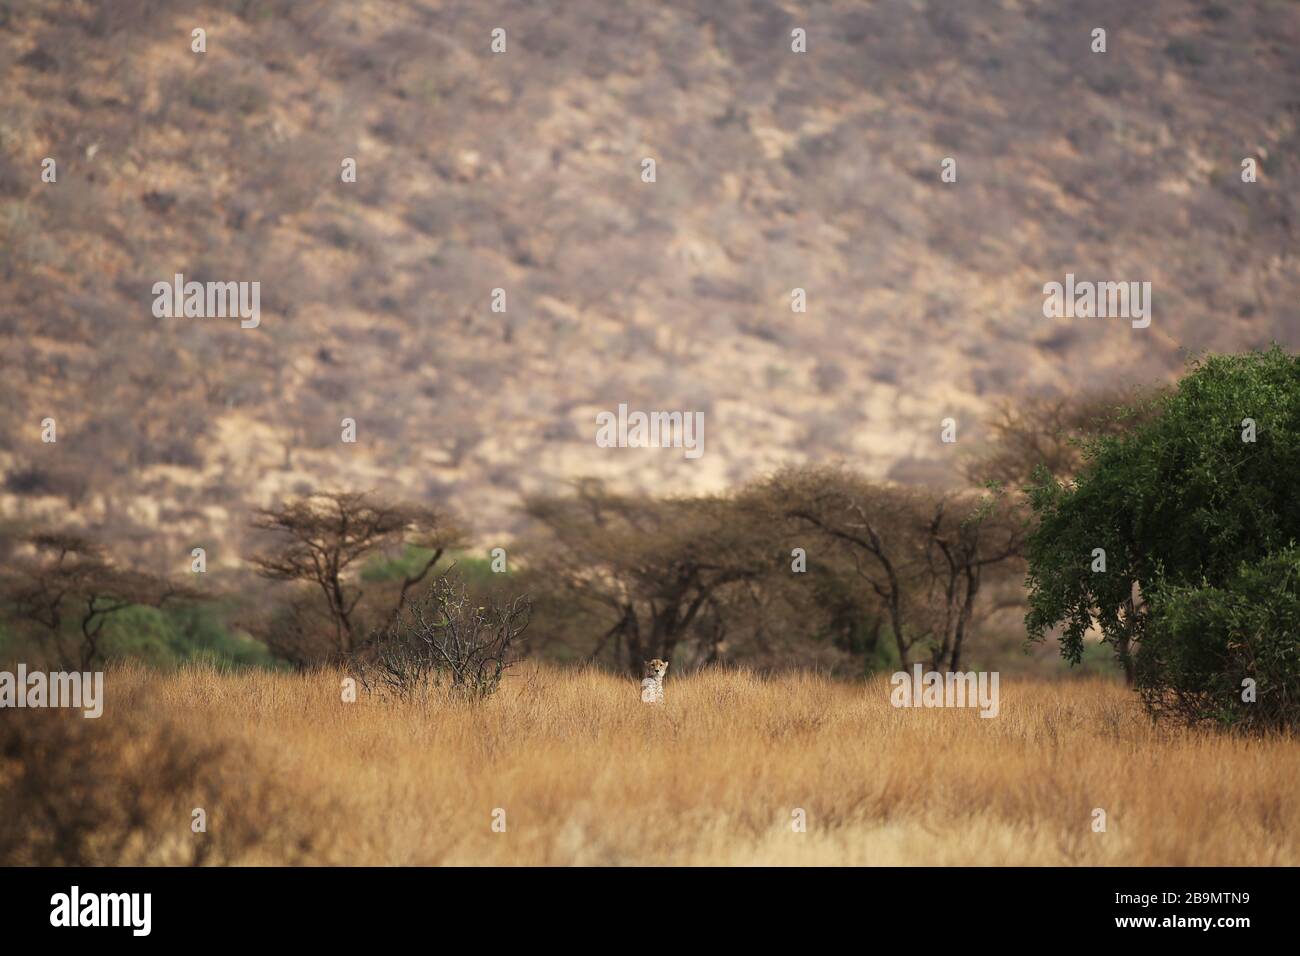 Un guepardo explora sus alrededores en medio de hierba seca y alta. Reserva Nacional Samburu, Kenia. Foto de stock